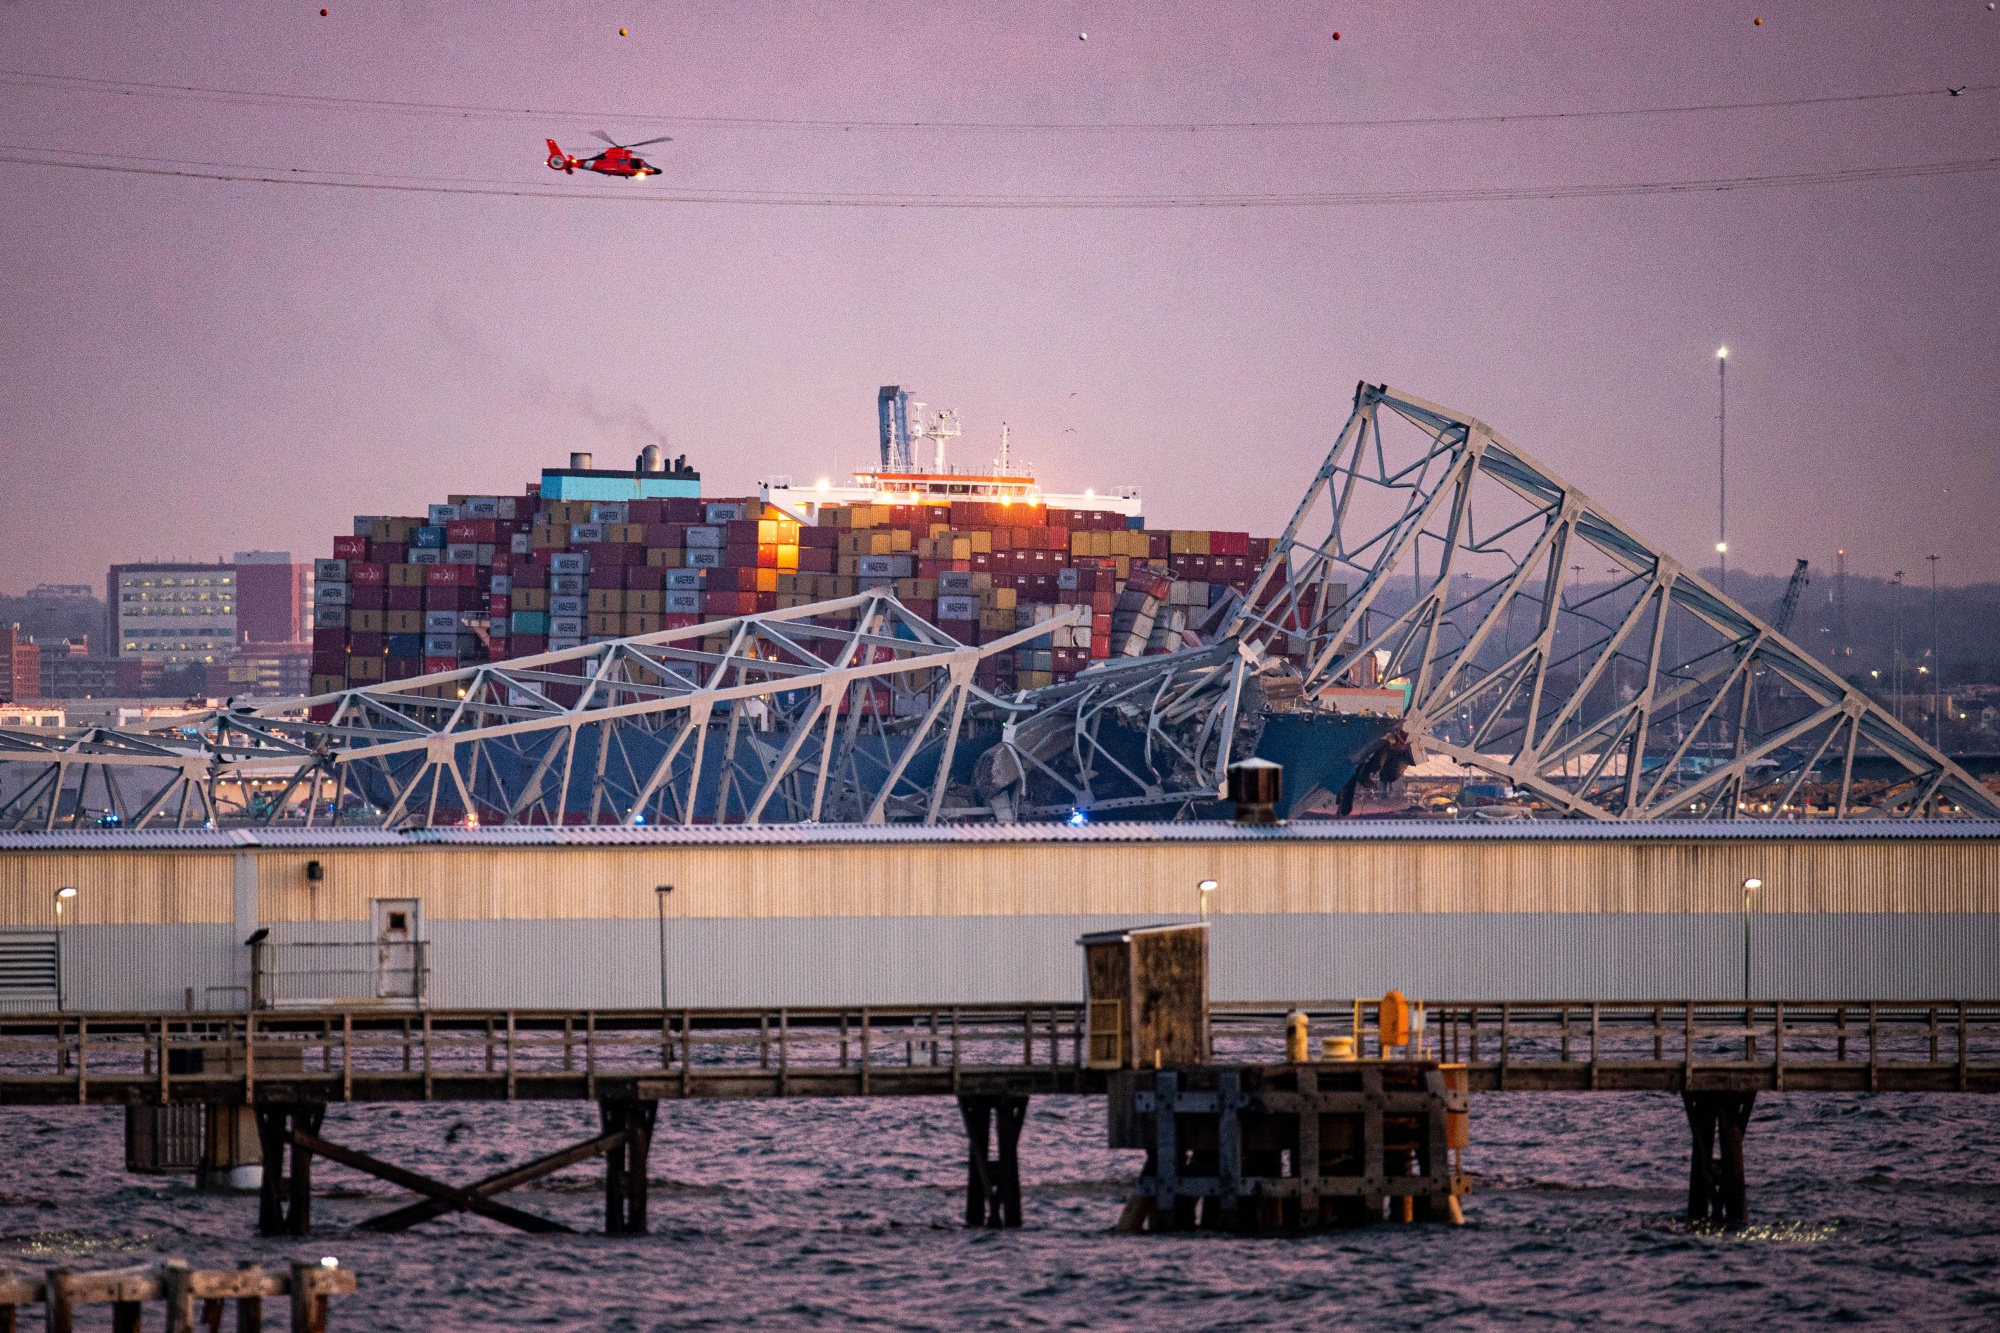 Baltimora:  sospese le ricerche con i sommozzatori sotto il ponte crollato, i sei dispersi dati per morti